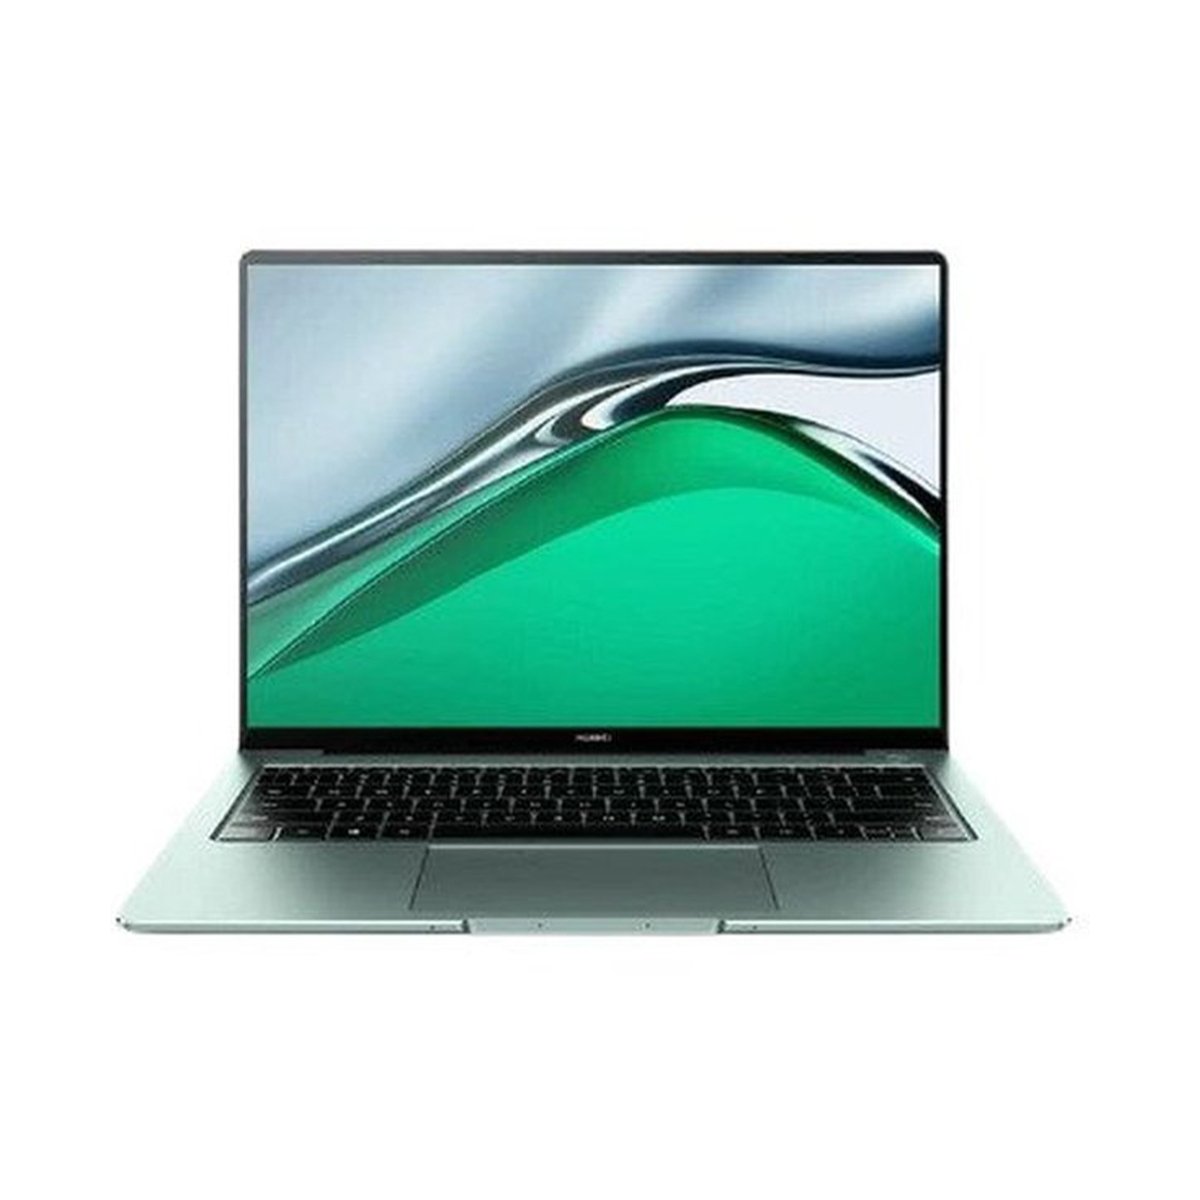 Huawei MateBook 13S (2021) Intel Core i7,16GB RAM,512GB SSD,Intel Iris Graphics,13.4" Display,Window 10,Spruce Green,English/Arabic Keyboard